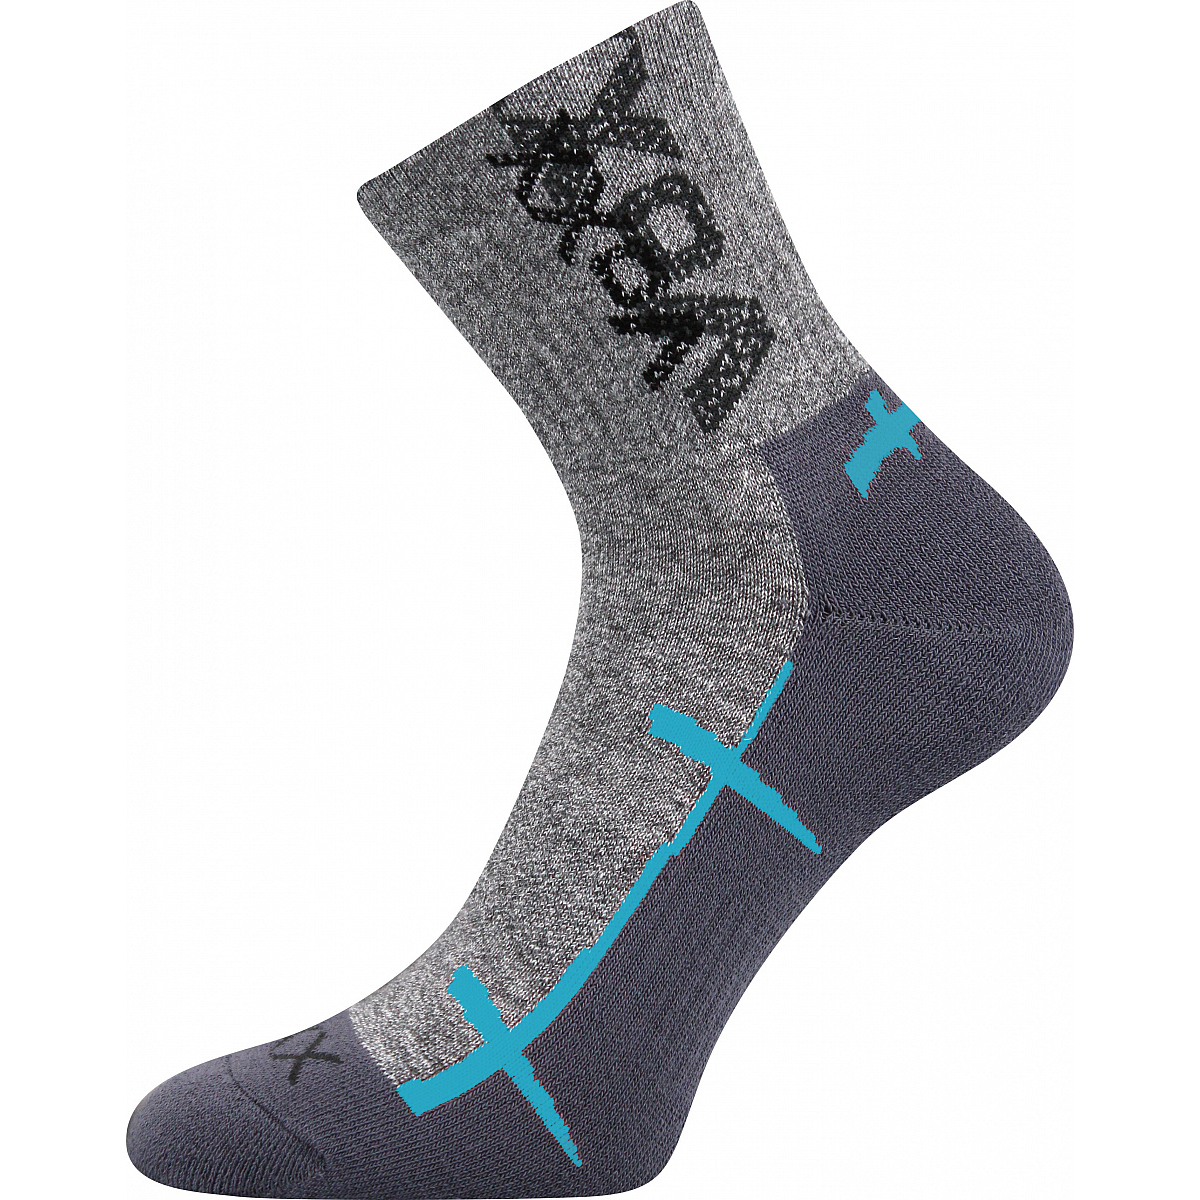 Sportovní ponožky Voxx Walli - šedé-světle modré, 35-38